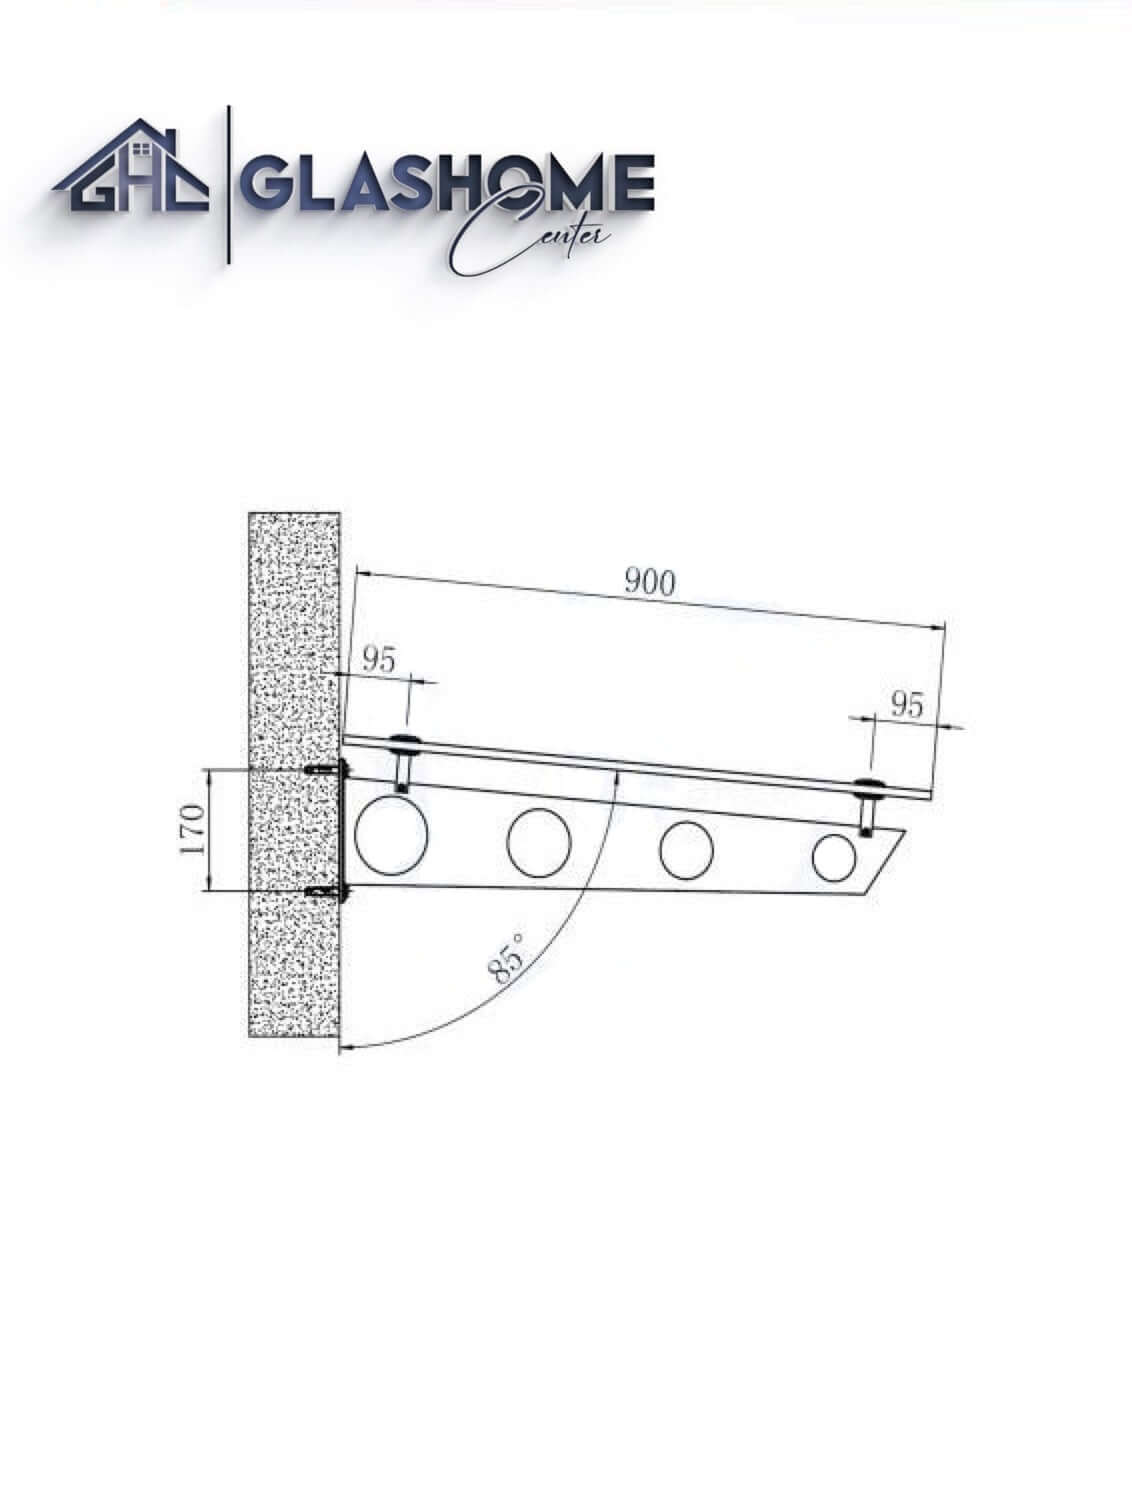 GlasHomeCenter - Glasvordach - Milchglas - 150x90cm - 13.1mm VSG - inkl. 2 schwarze Edelstahlhalterungen Variante "Stockholm"